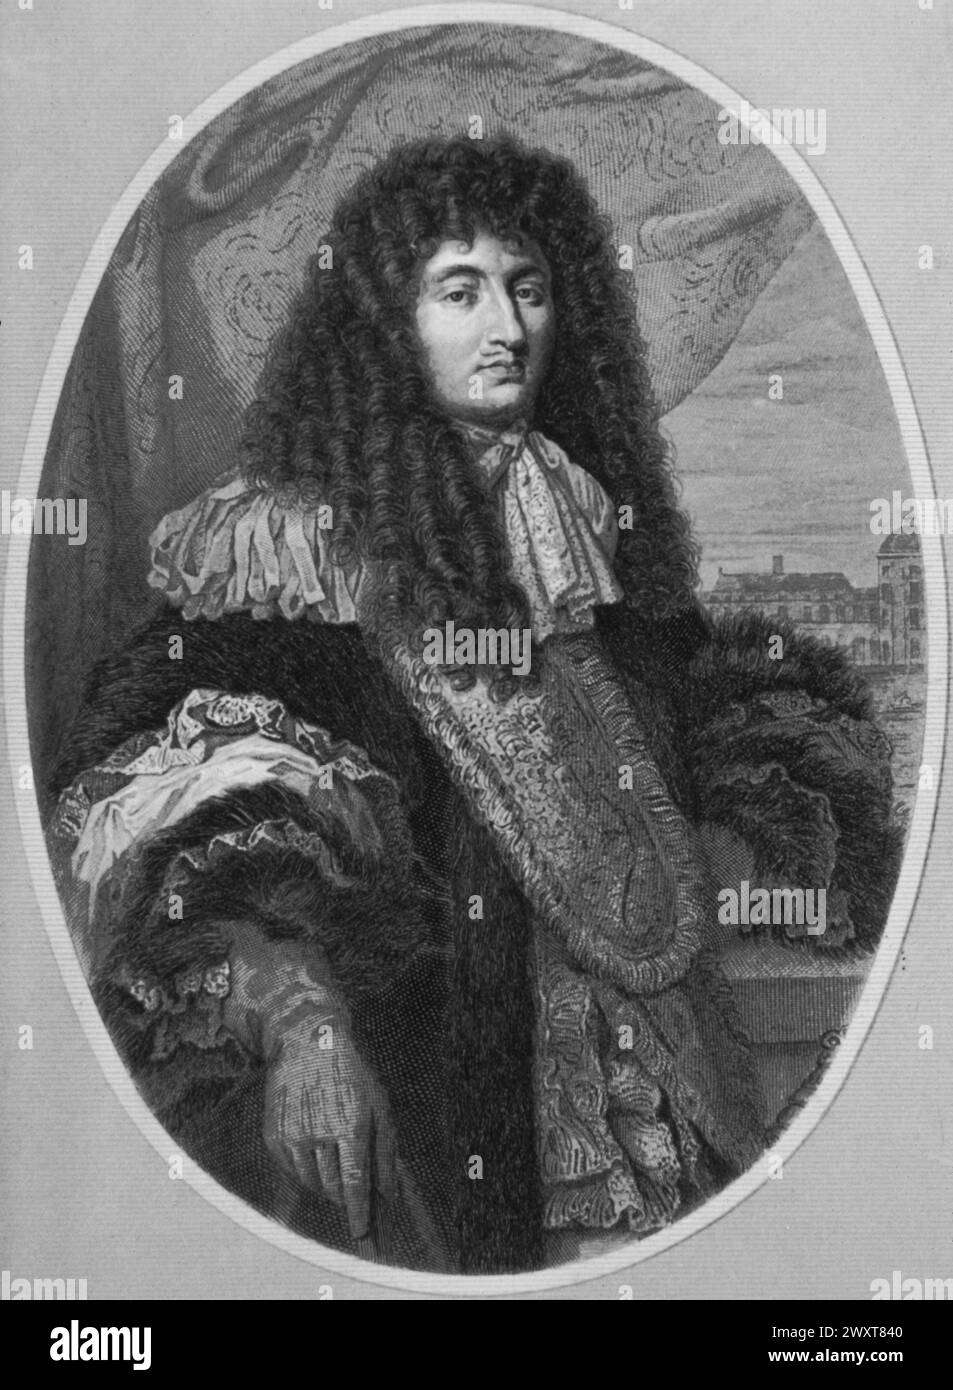 Roi Louis XIV de France, gravure d'après un tableau de l'artiste français Philippe de Champagne, XVIIe siècle Banque D'Images